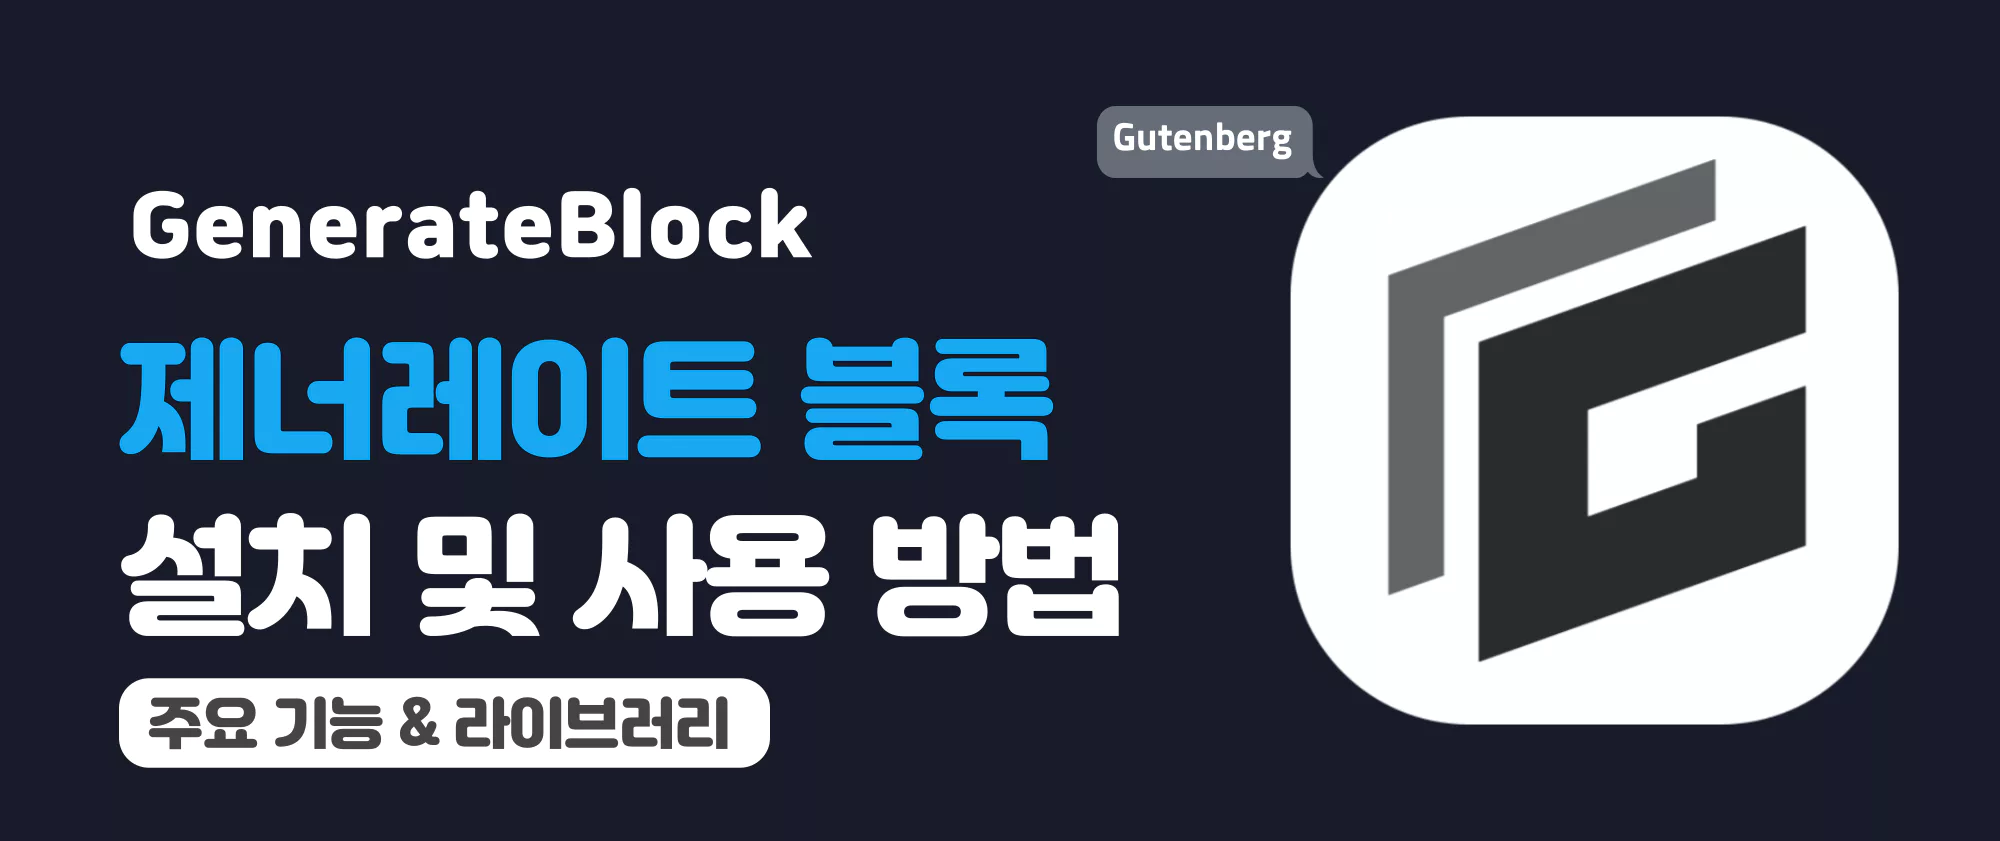 워드프레스-제너레이트-블록GenerateBlocks-플러그인-설치-및-사용-방법